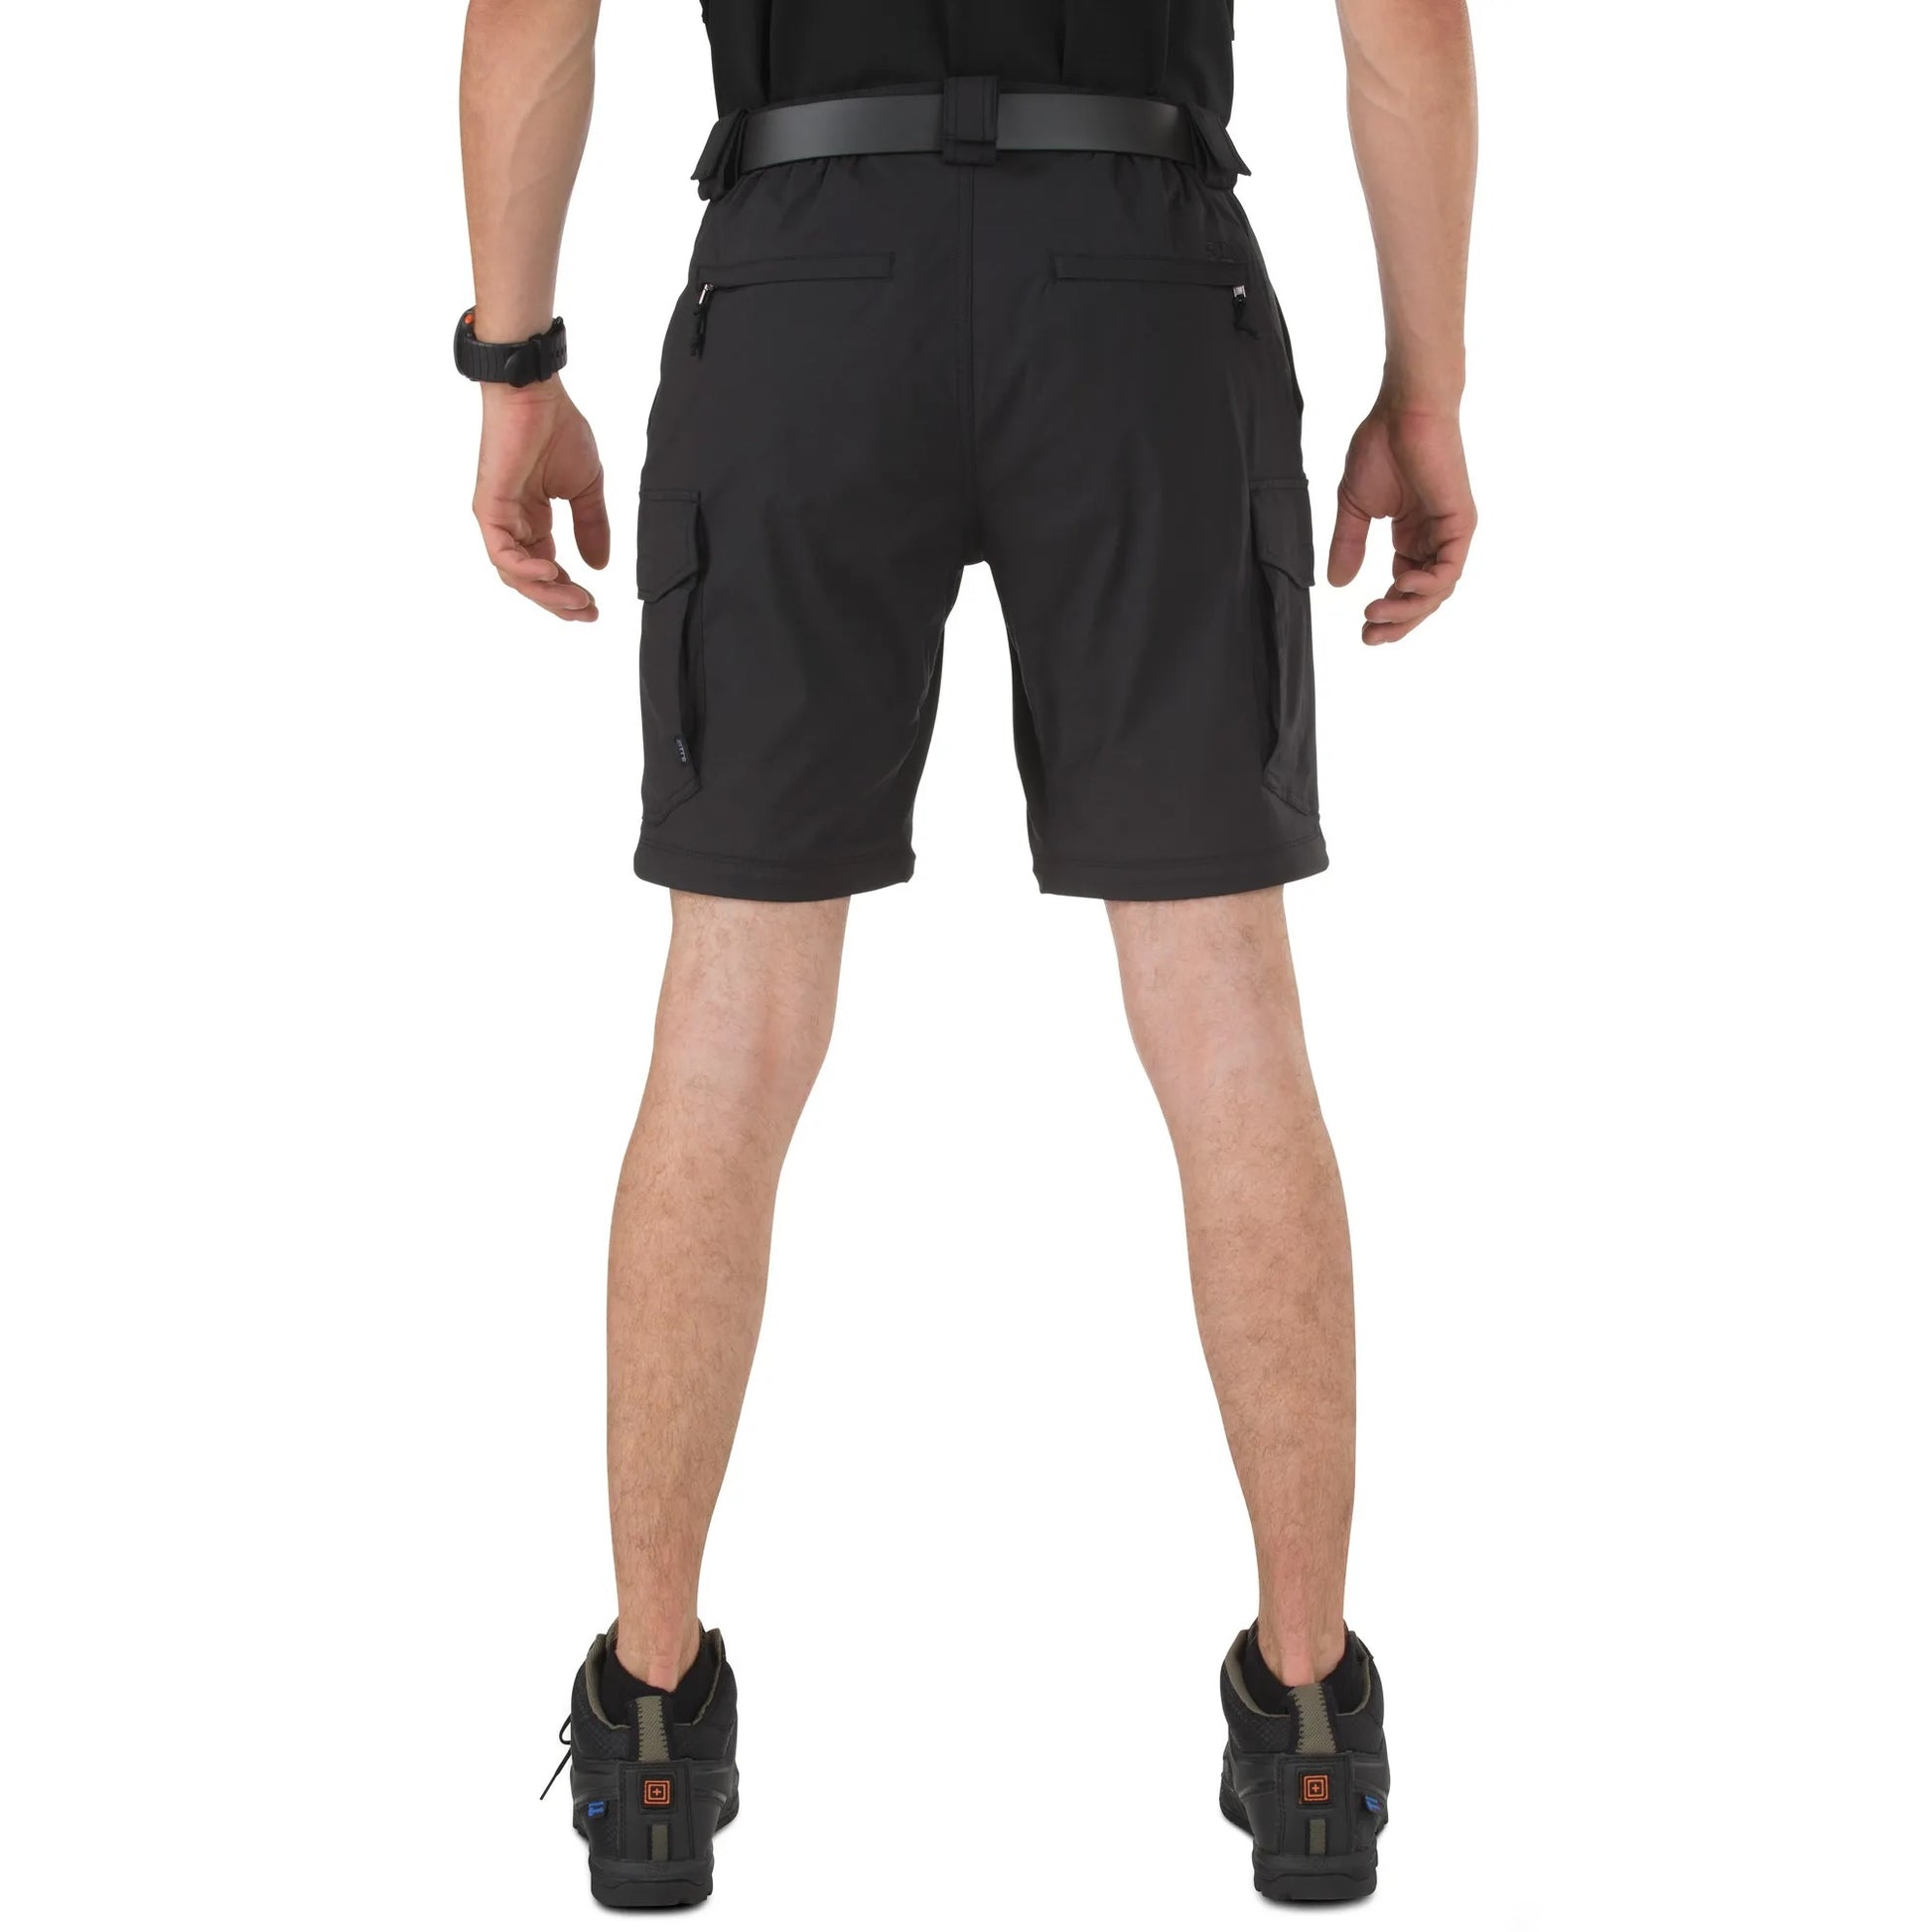 5.11 Tactical Bike Patrol Pants-Tac Essentials